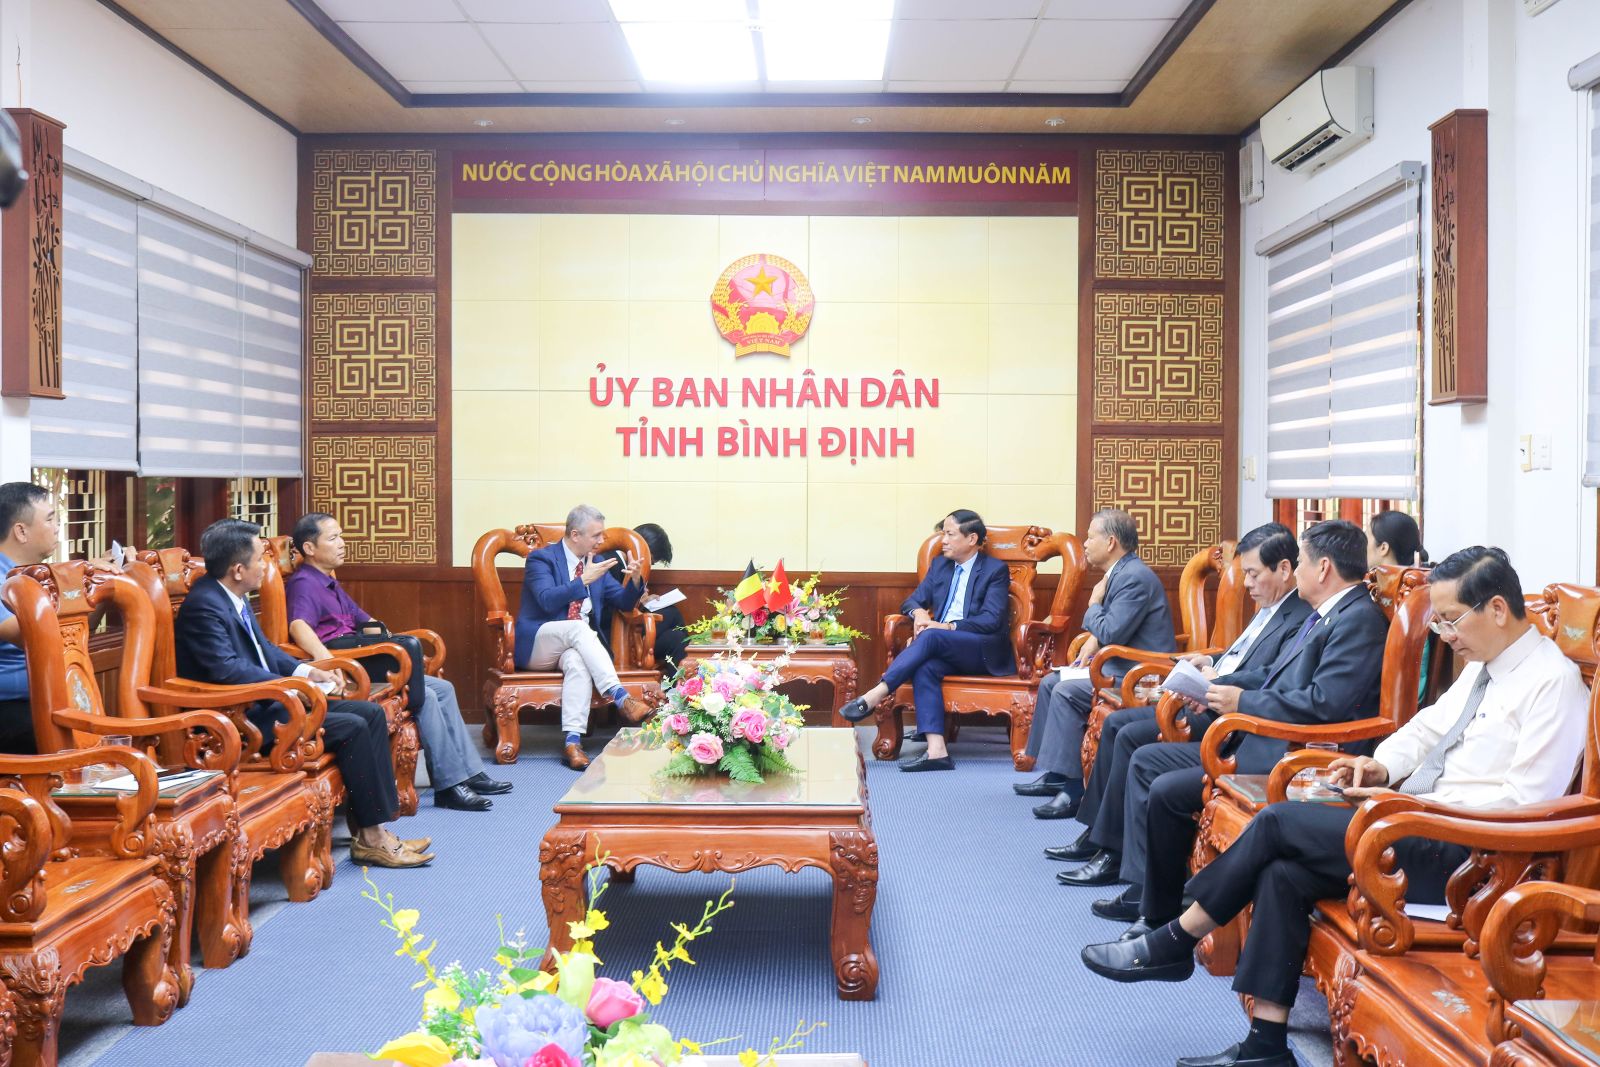 Đại sứ Vương quốc Bỉ tại Việt Nam hứa sẽ kết nối Bình Định với nhà đầu tư của Bỉ- Ảnh 1.